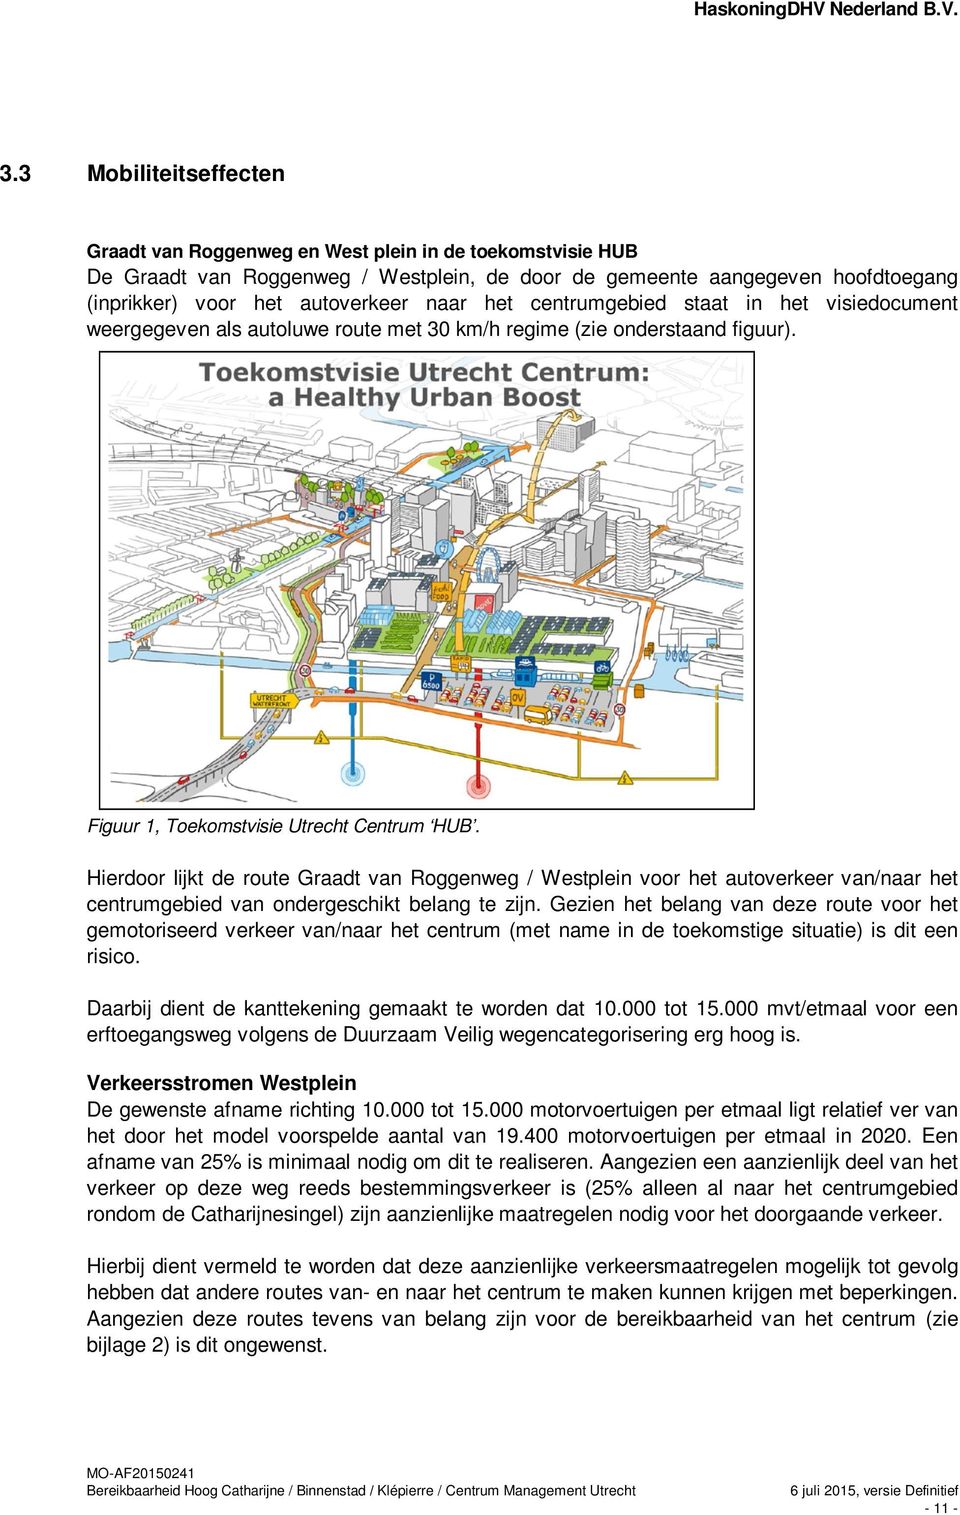 Hierdoor lijkt de route Graadt van Roggenweg / Westplein voor het autoverkeer van/naar het centrumgebied van ondergeschikt belang te zijn.